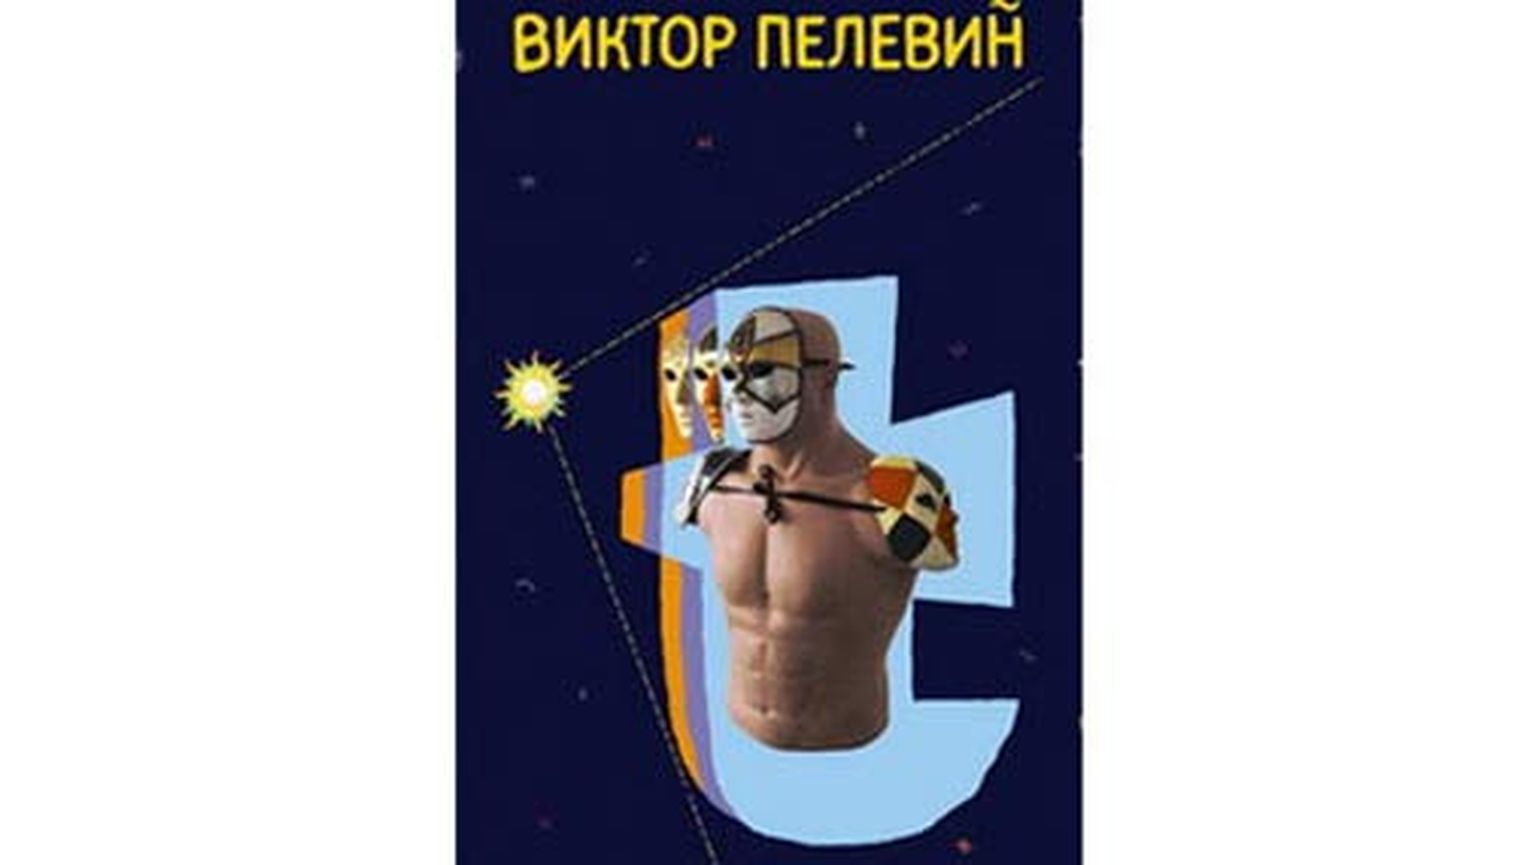 Обложка романа "Т" Виктора Пелевина.